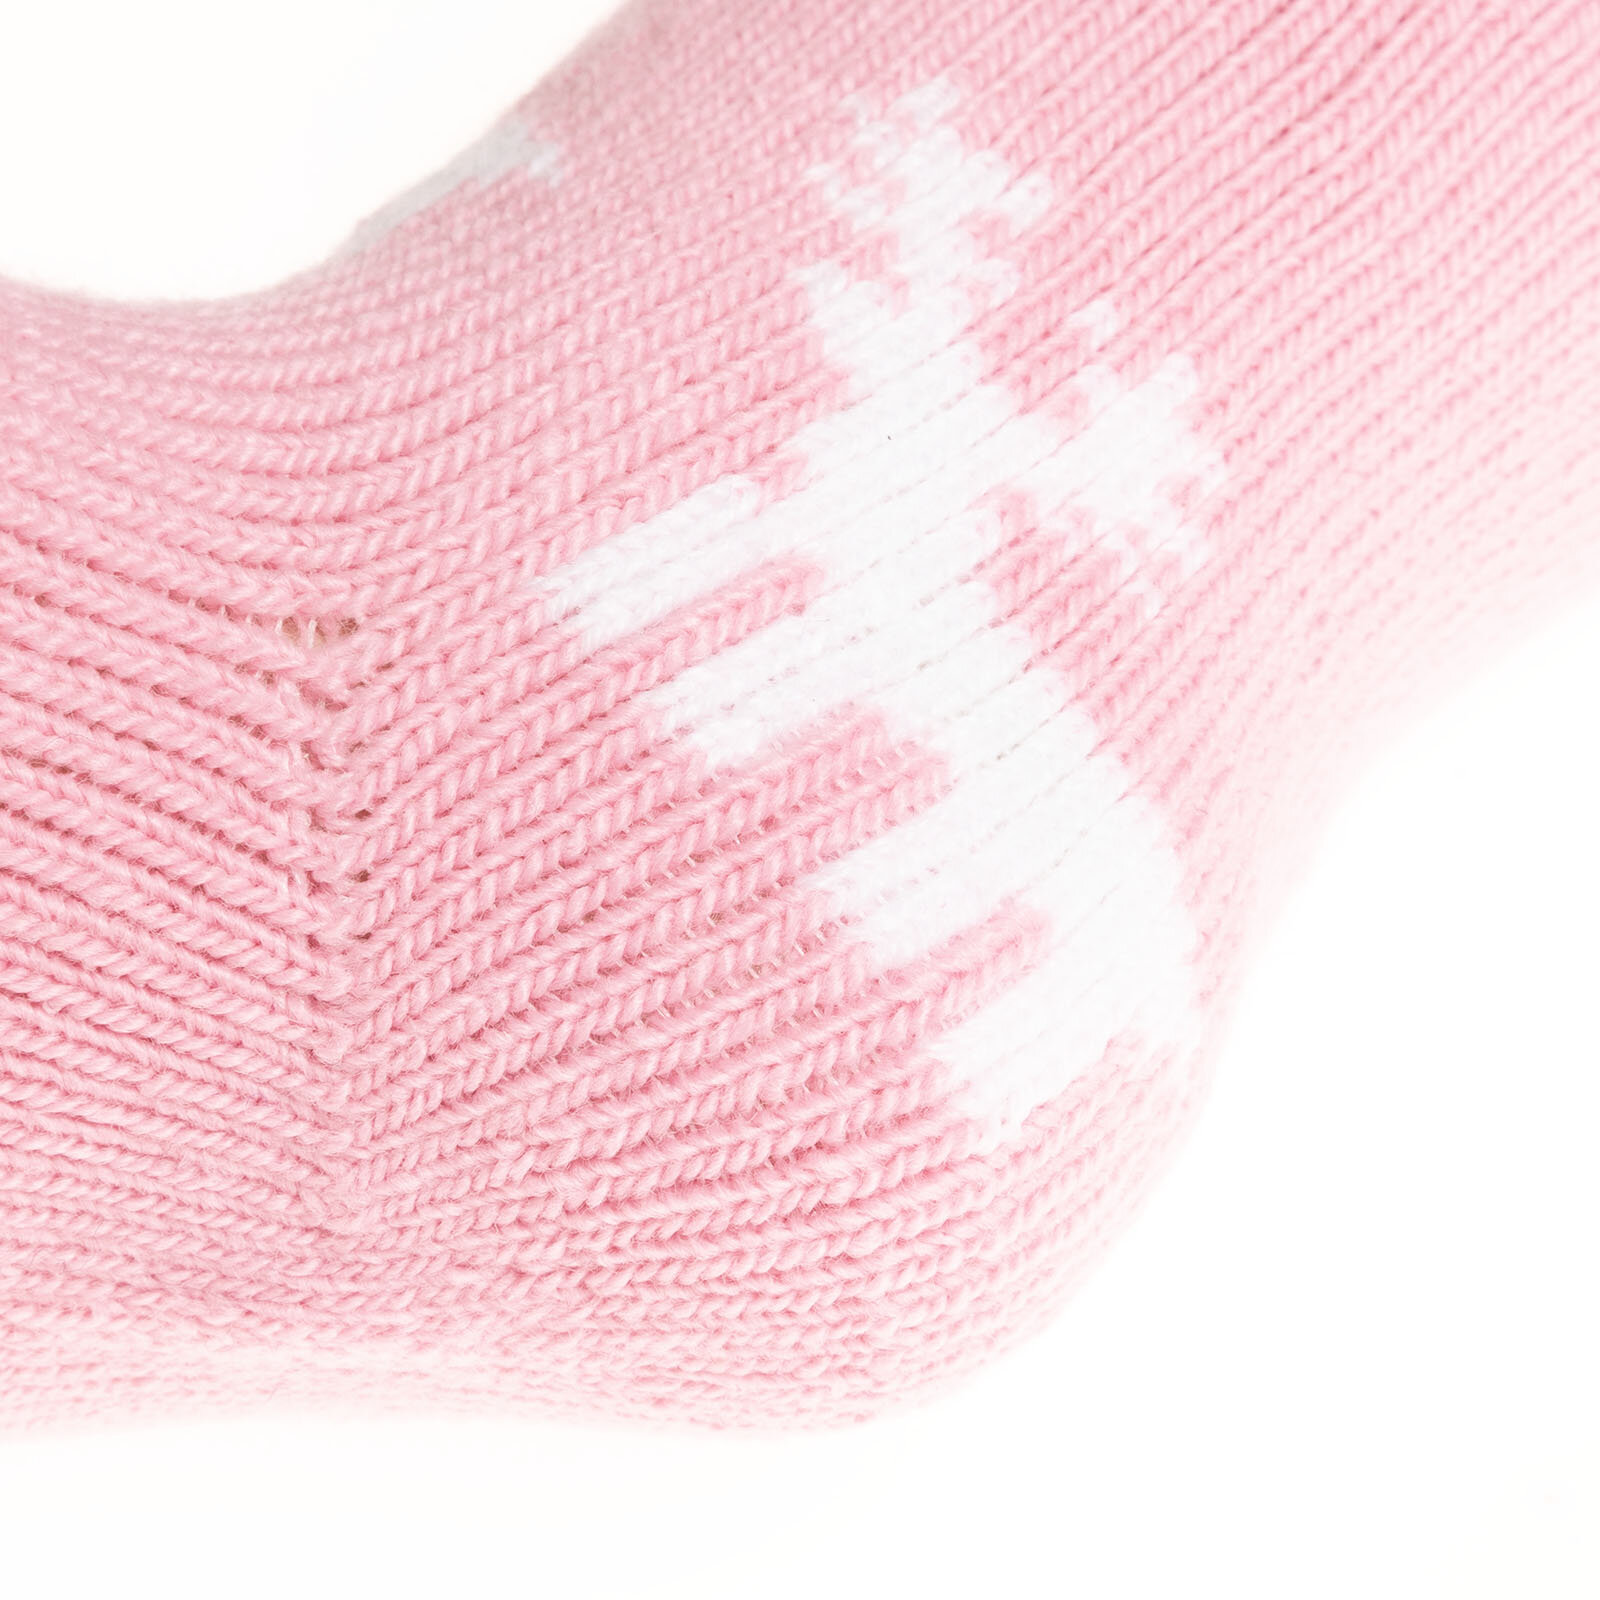 Bolero Desenli Tekli Soket Çorap Kız Bebek